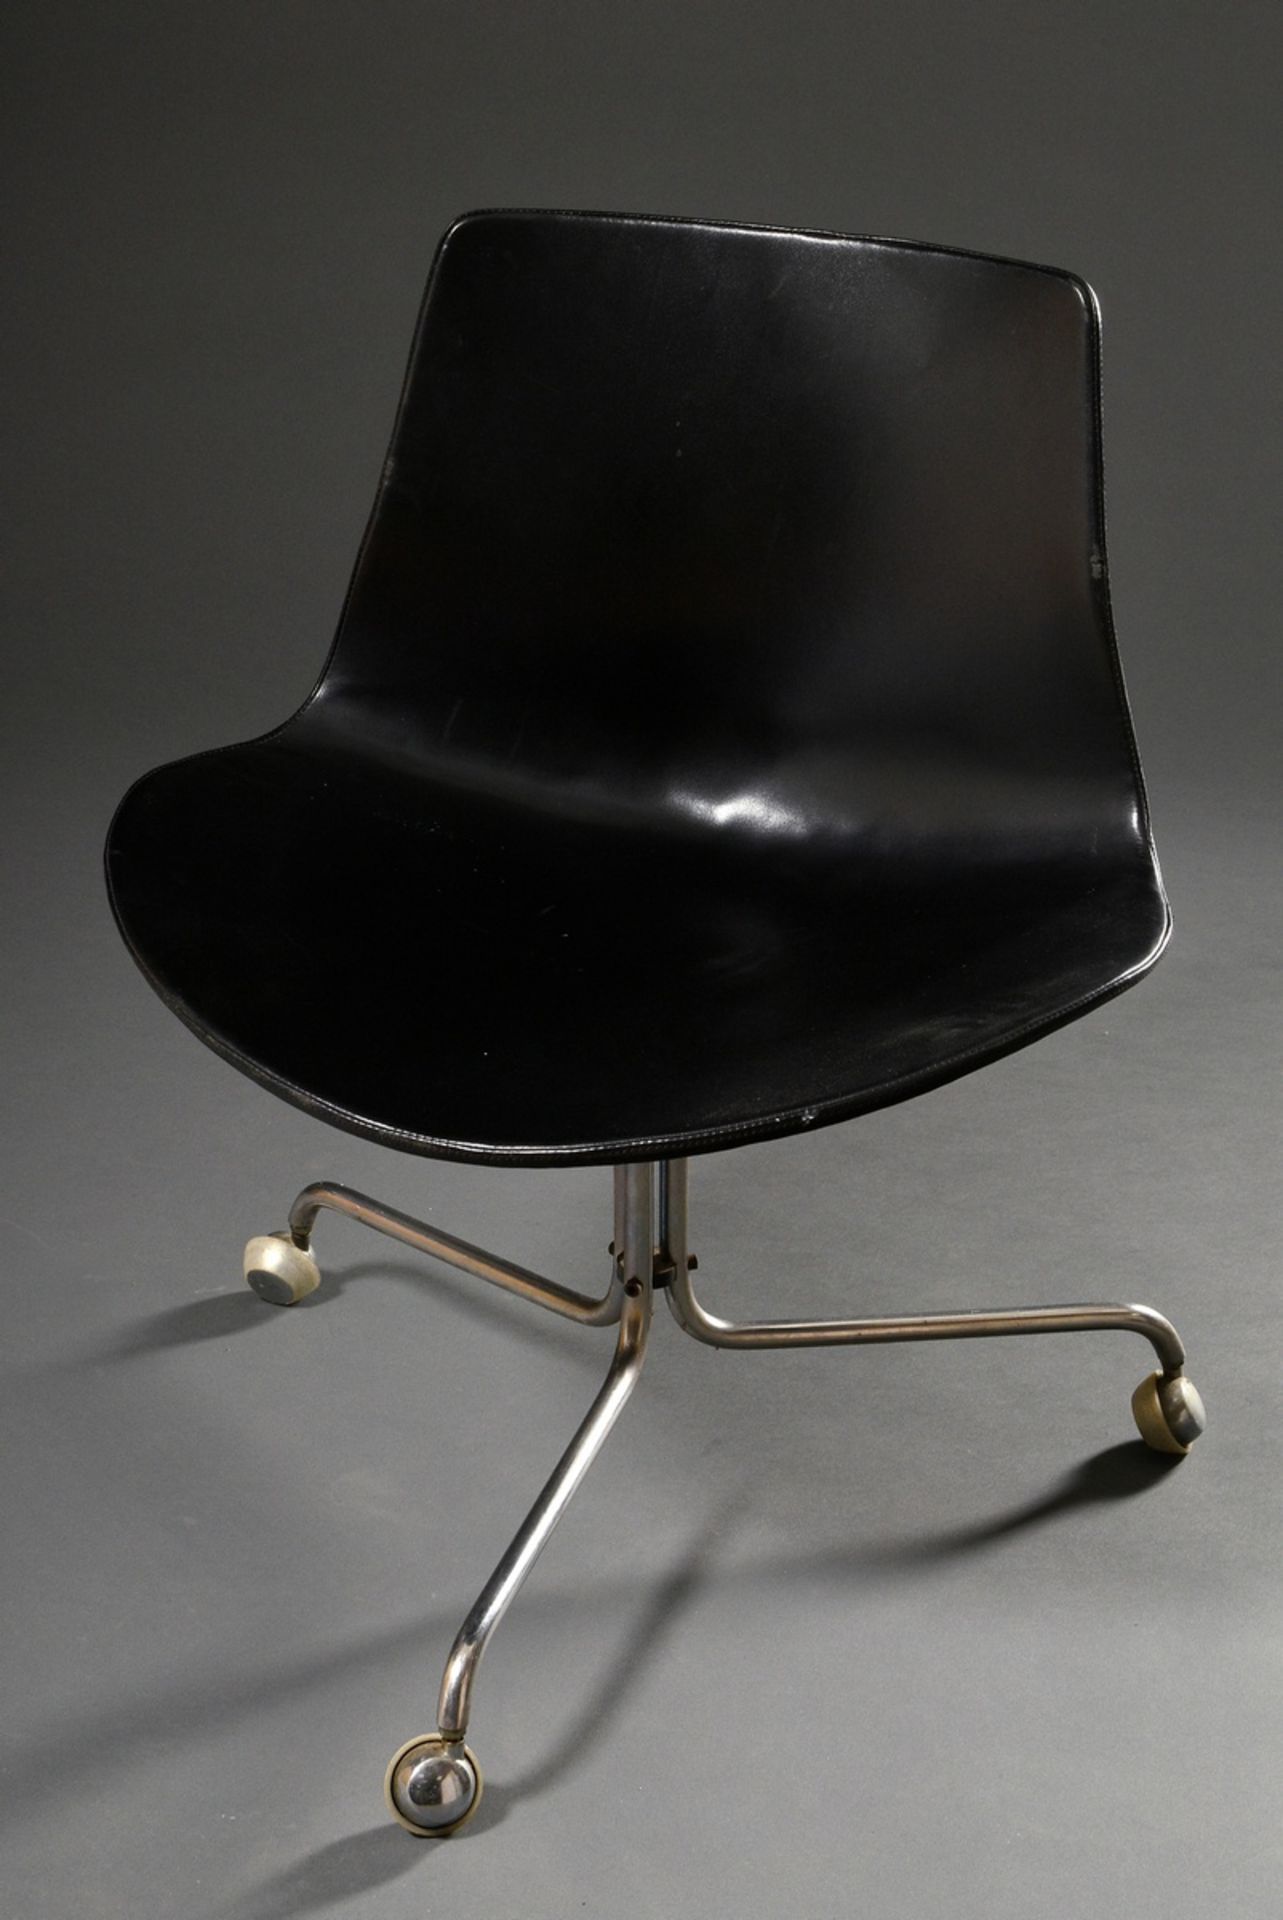 Dänischer Design Drehstuhl "BO-611", dreibeiniges Stahlrohr Gestell mit Rollen und Sitzschale mit s